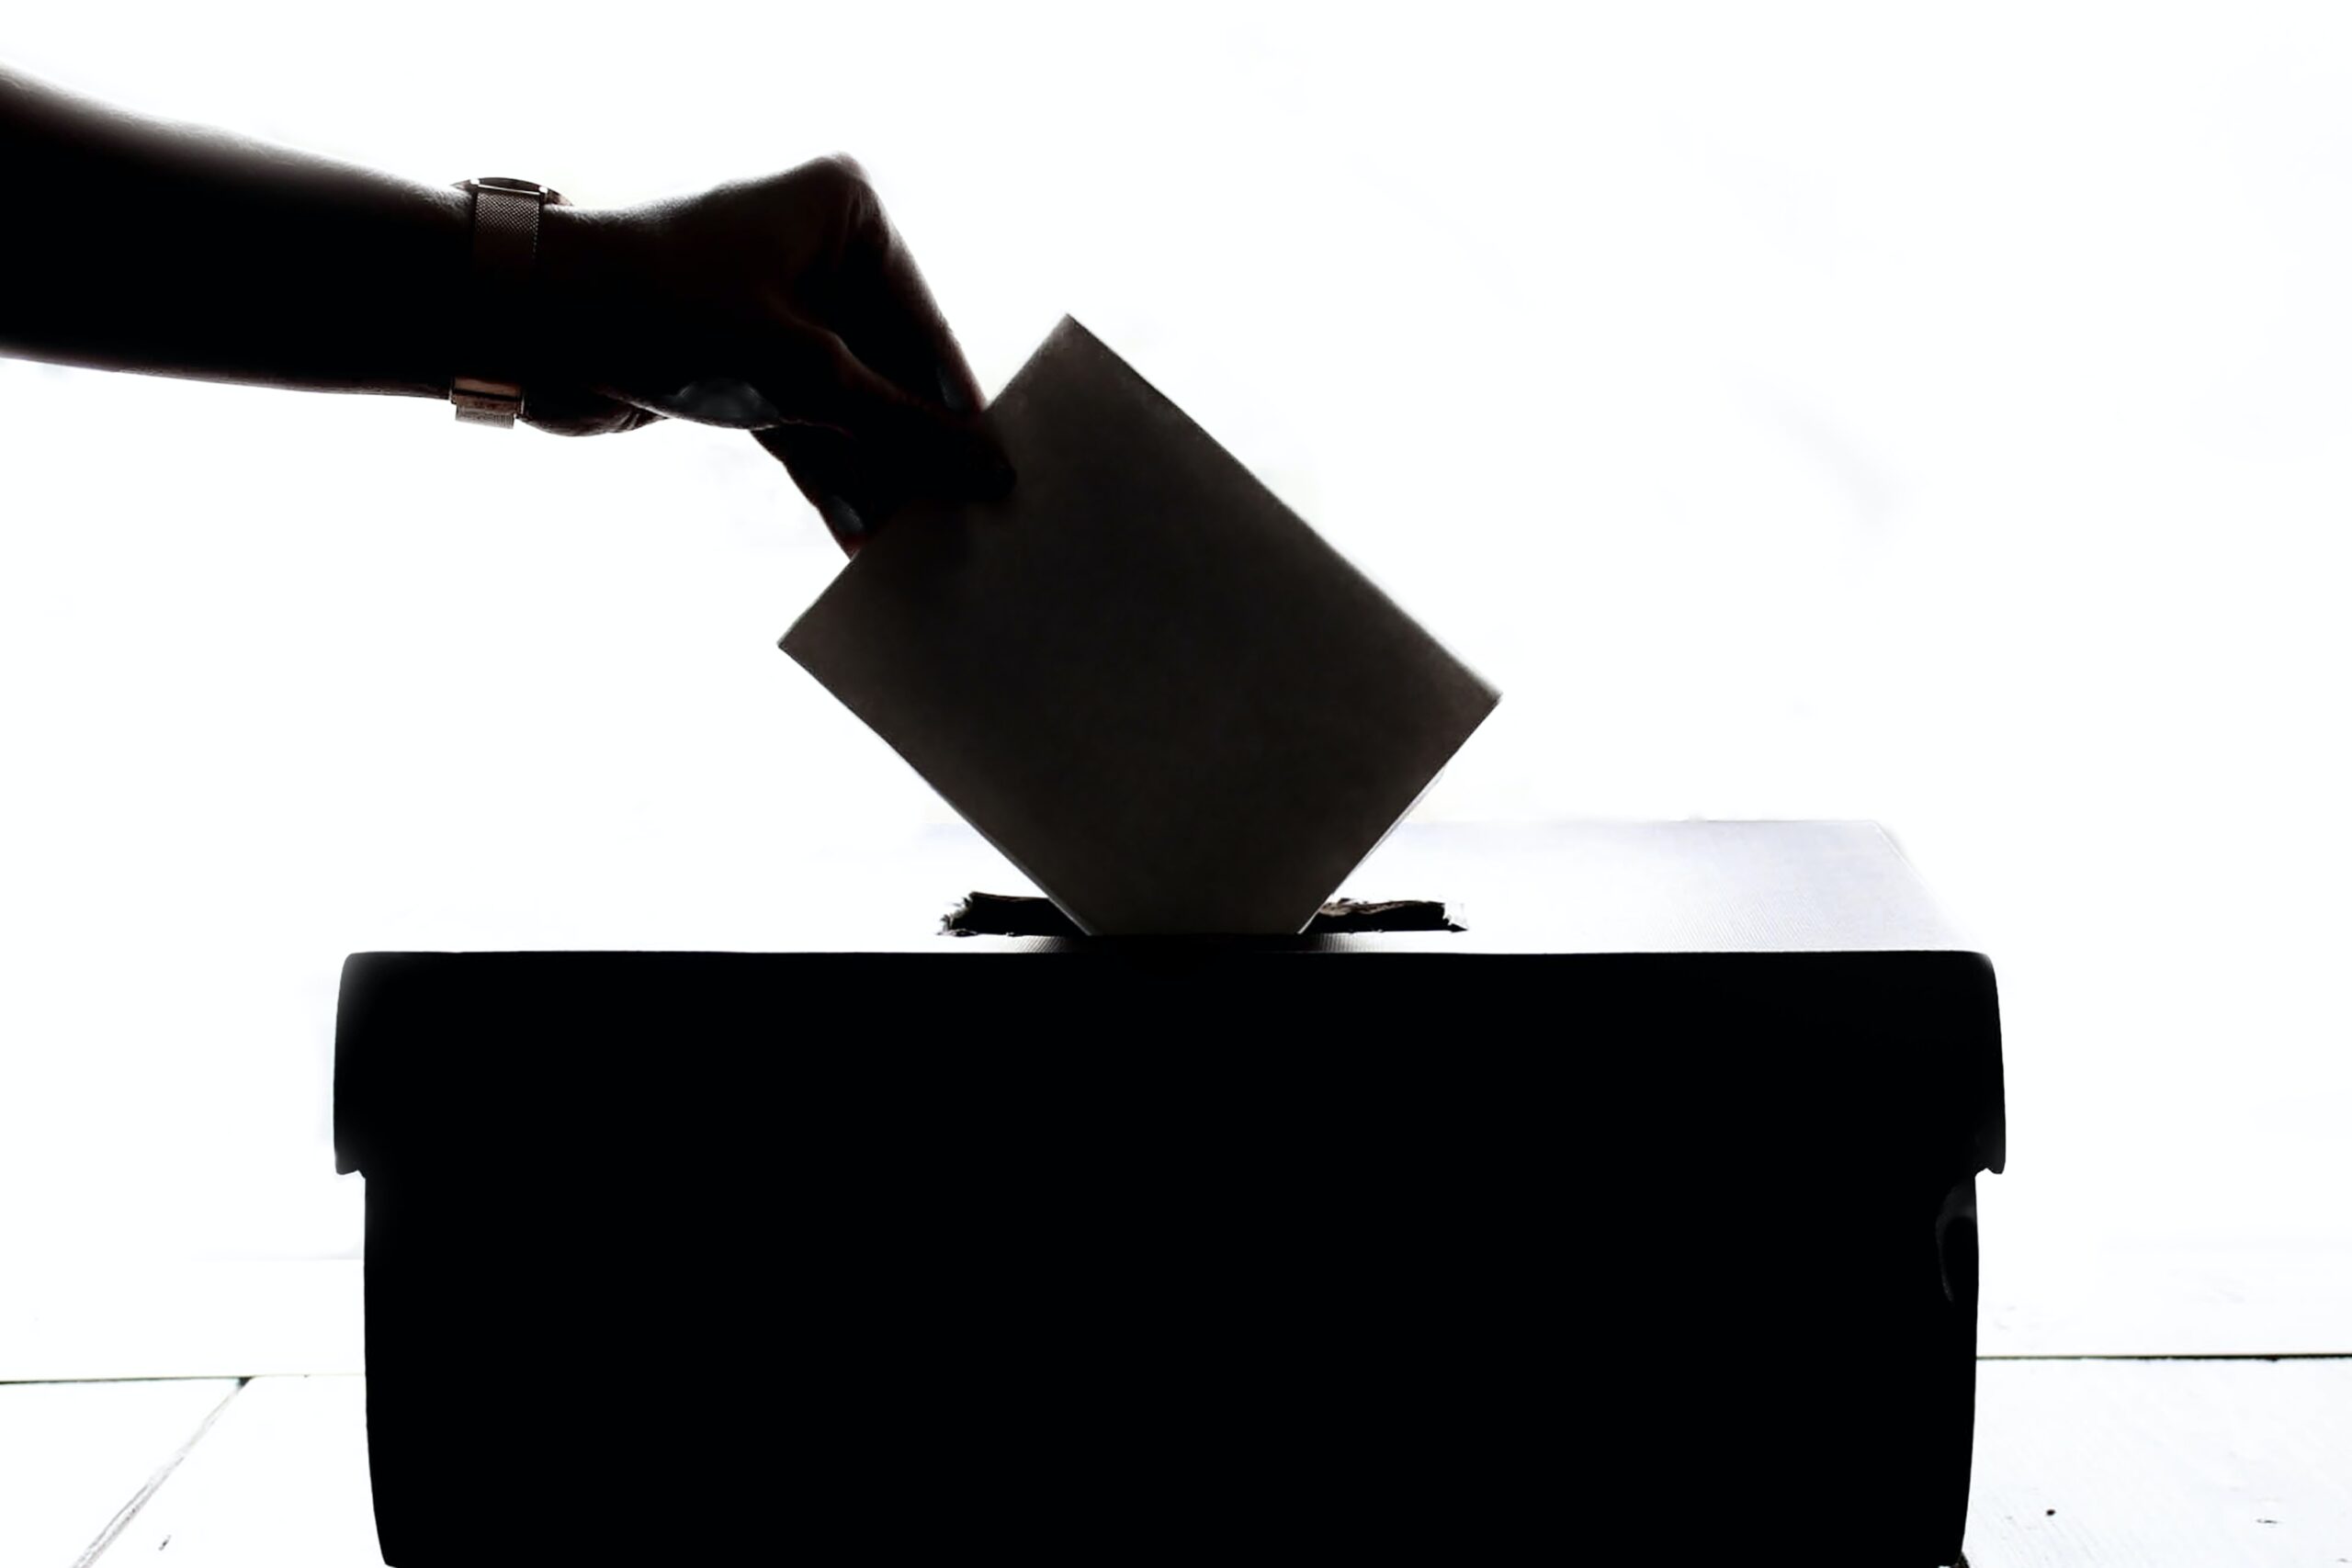 An hand putting a paper inside a ballot box